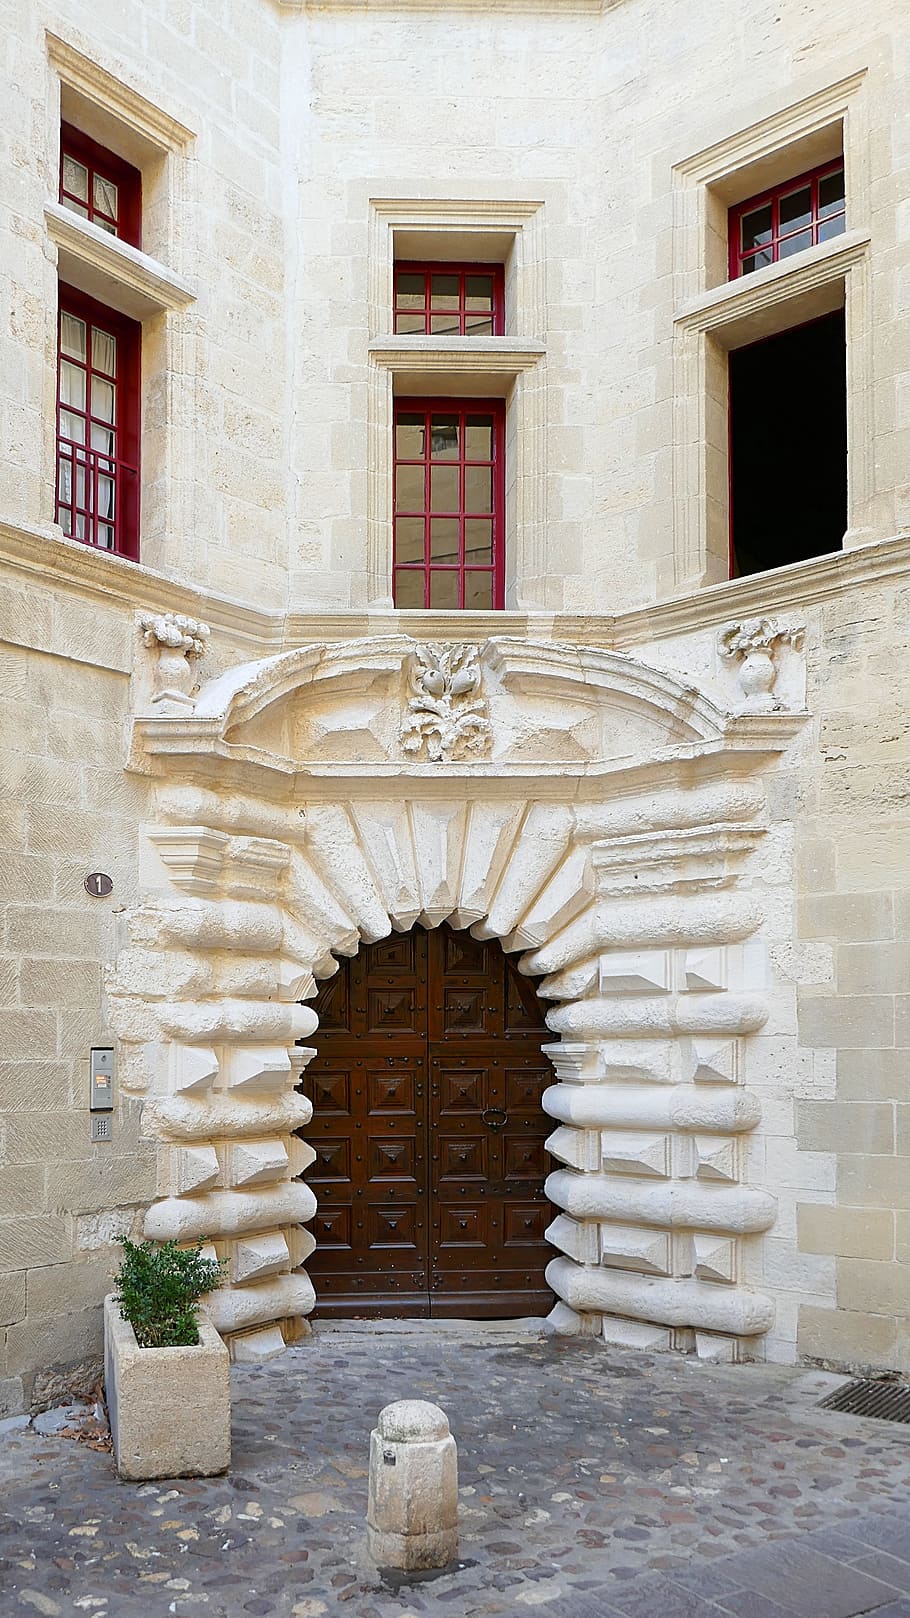 ドア, ユゼ, サンテティエンヌ, ガール, 1 rue saint etienne, フランス, 中世, 門, ルイ13世, 木材